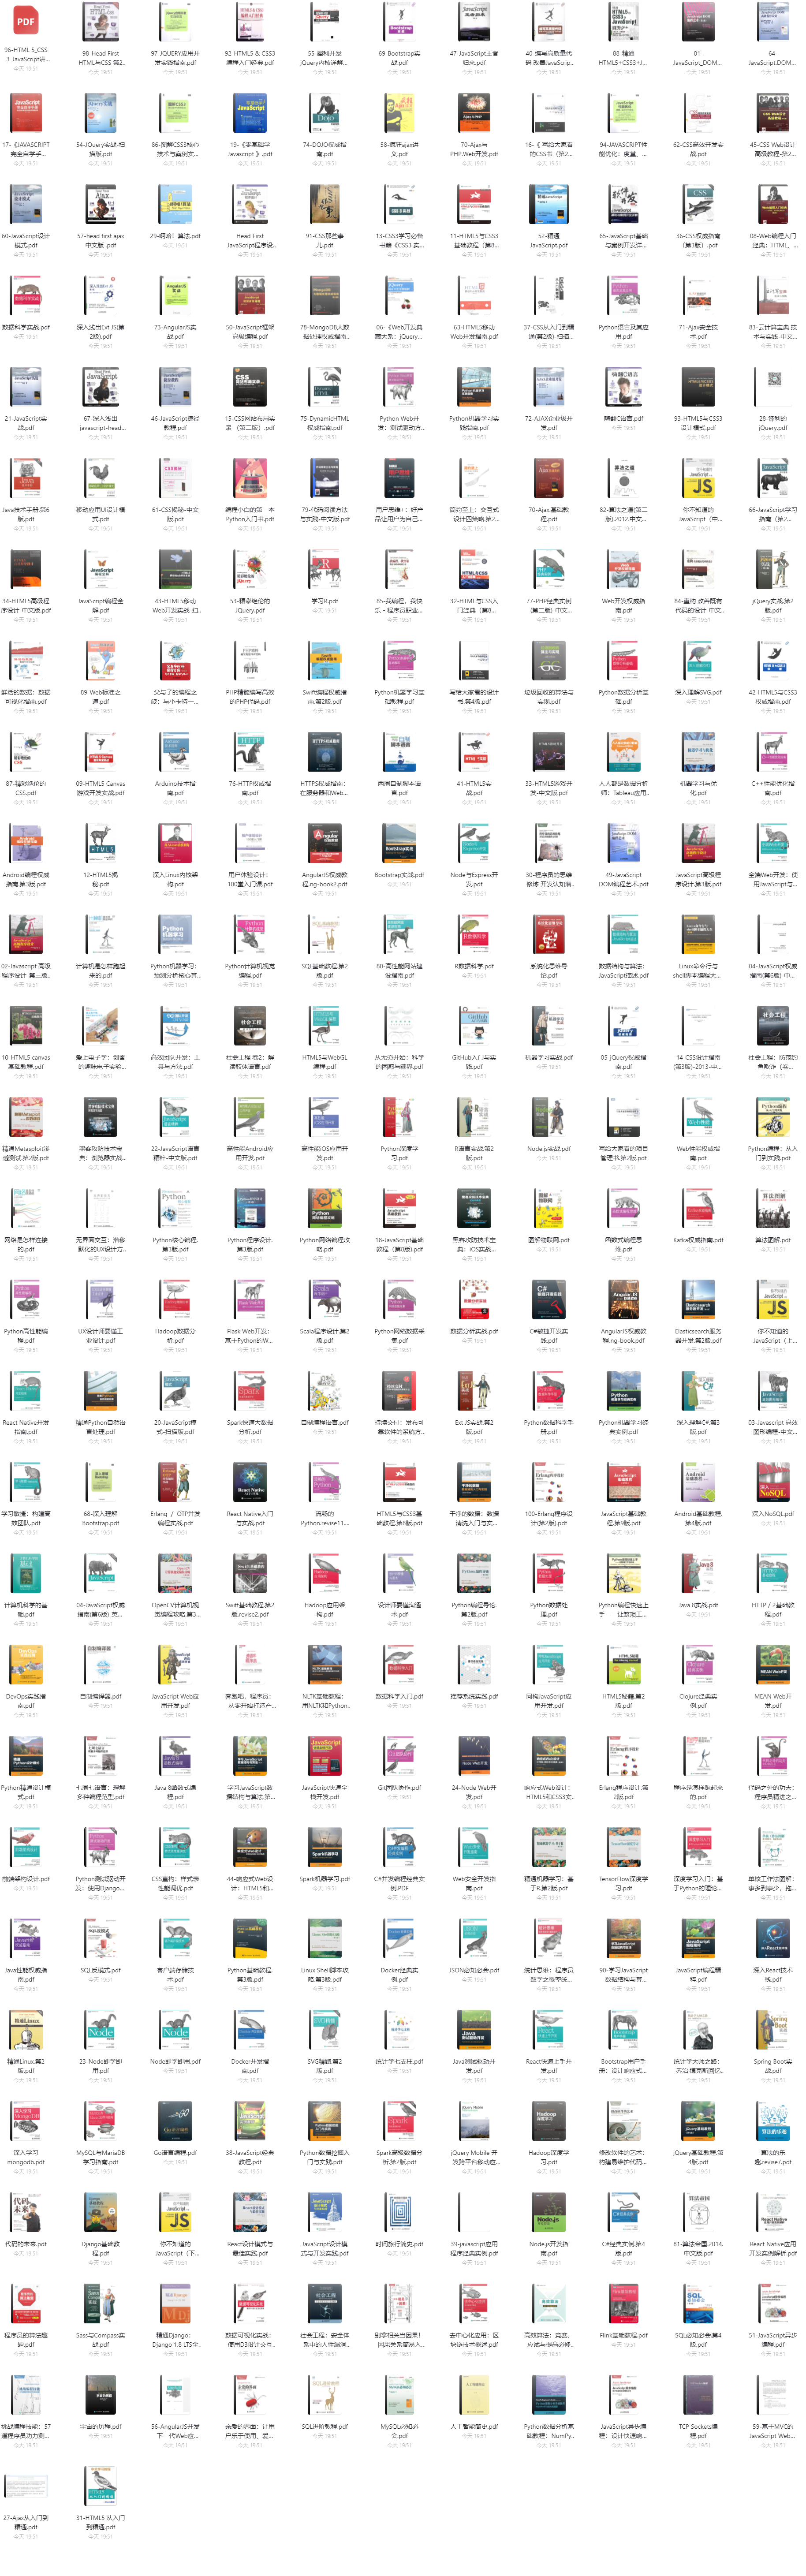 【电子书籍】图灵程序丛书 299本-电子图书馆社区-电子图书-FancyPig's blog